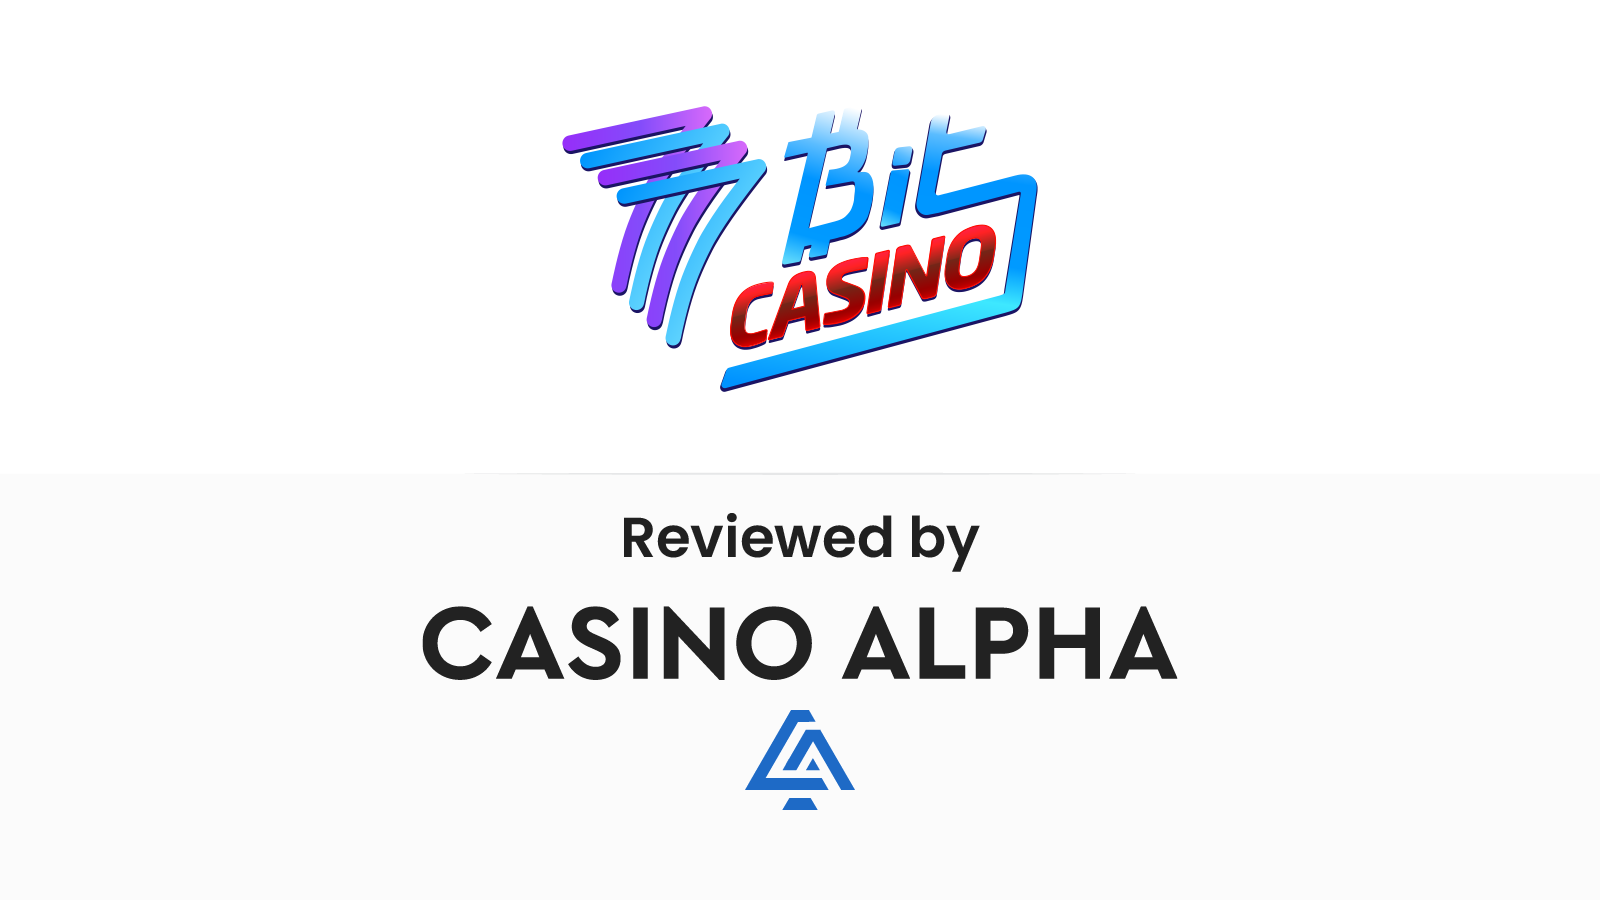 7Bit Casino Review & Promotions List